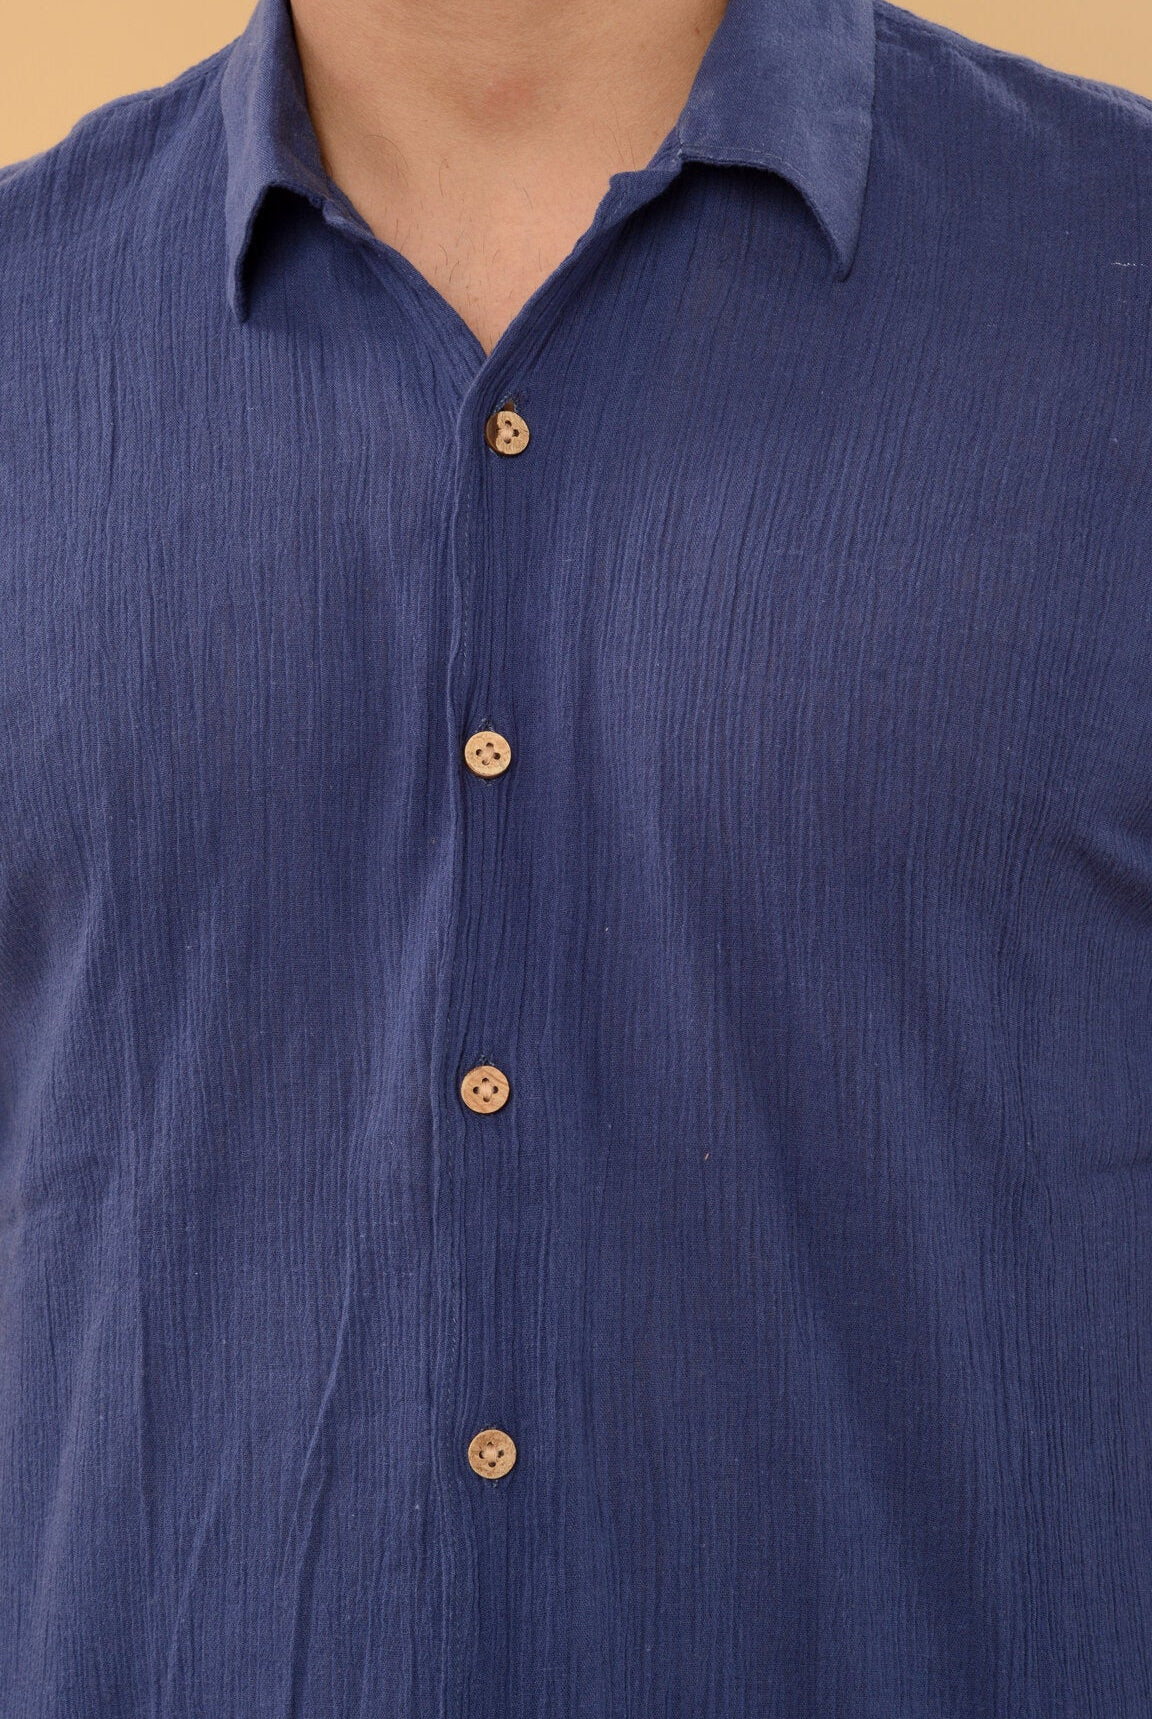 Blue Shirt - CiceroniShirtHouse Of K.C